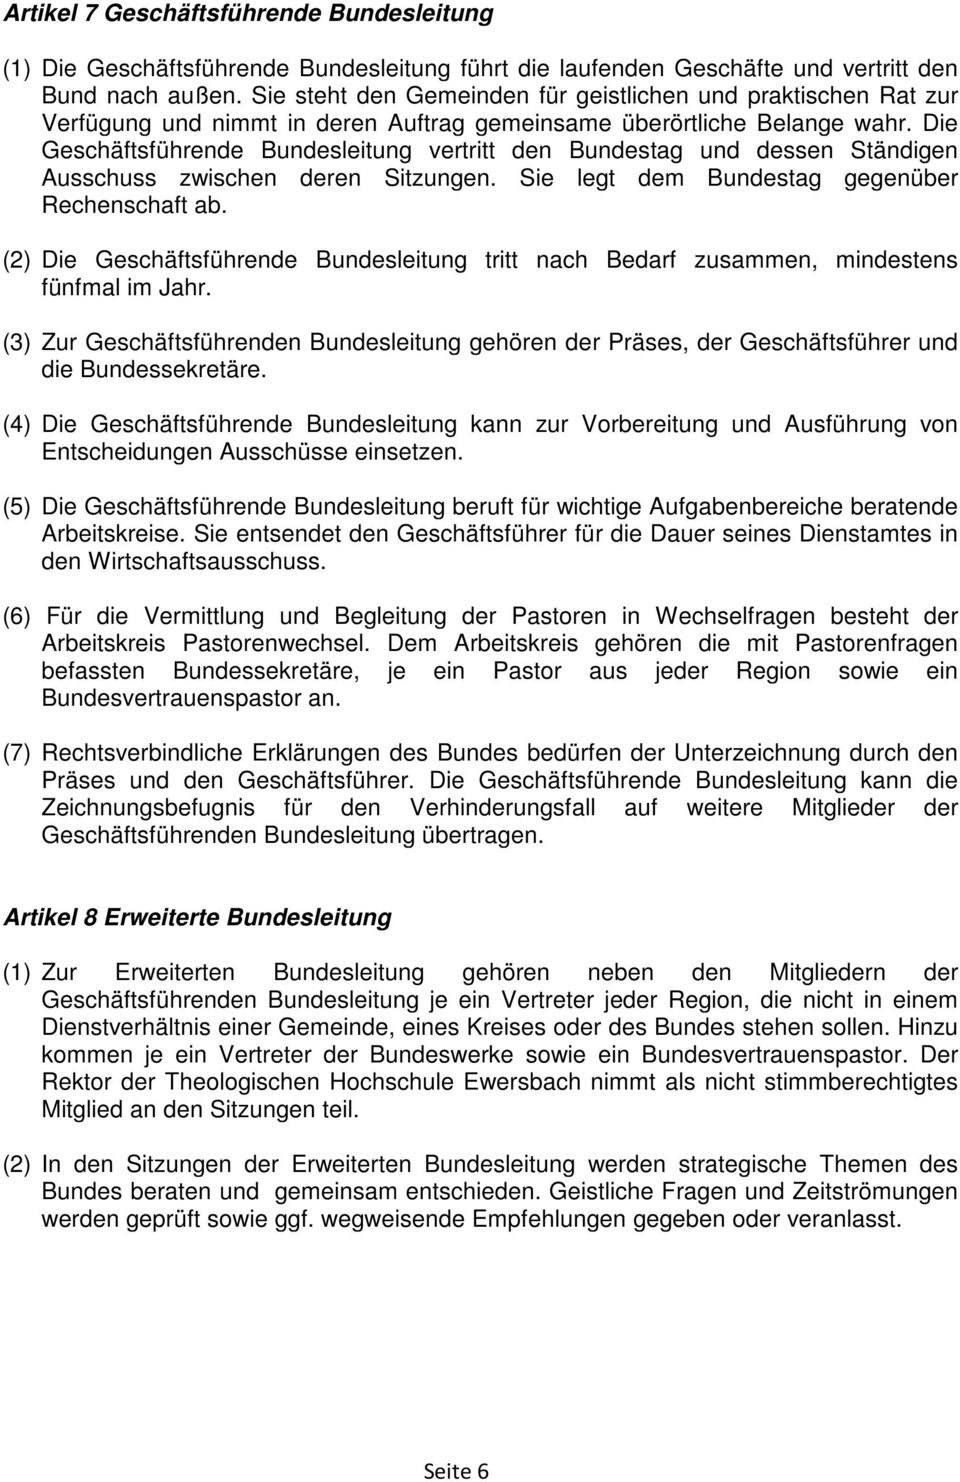 Die Geschäftsführende Bundesleitung vertritt den Bundestag und dessen Ständigen Ausschuss zwischen deren Sitzungen. Sie legt dem Bundestag gegenüber Rechenschaft ab.